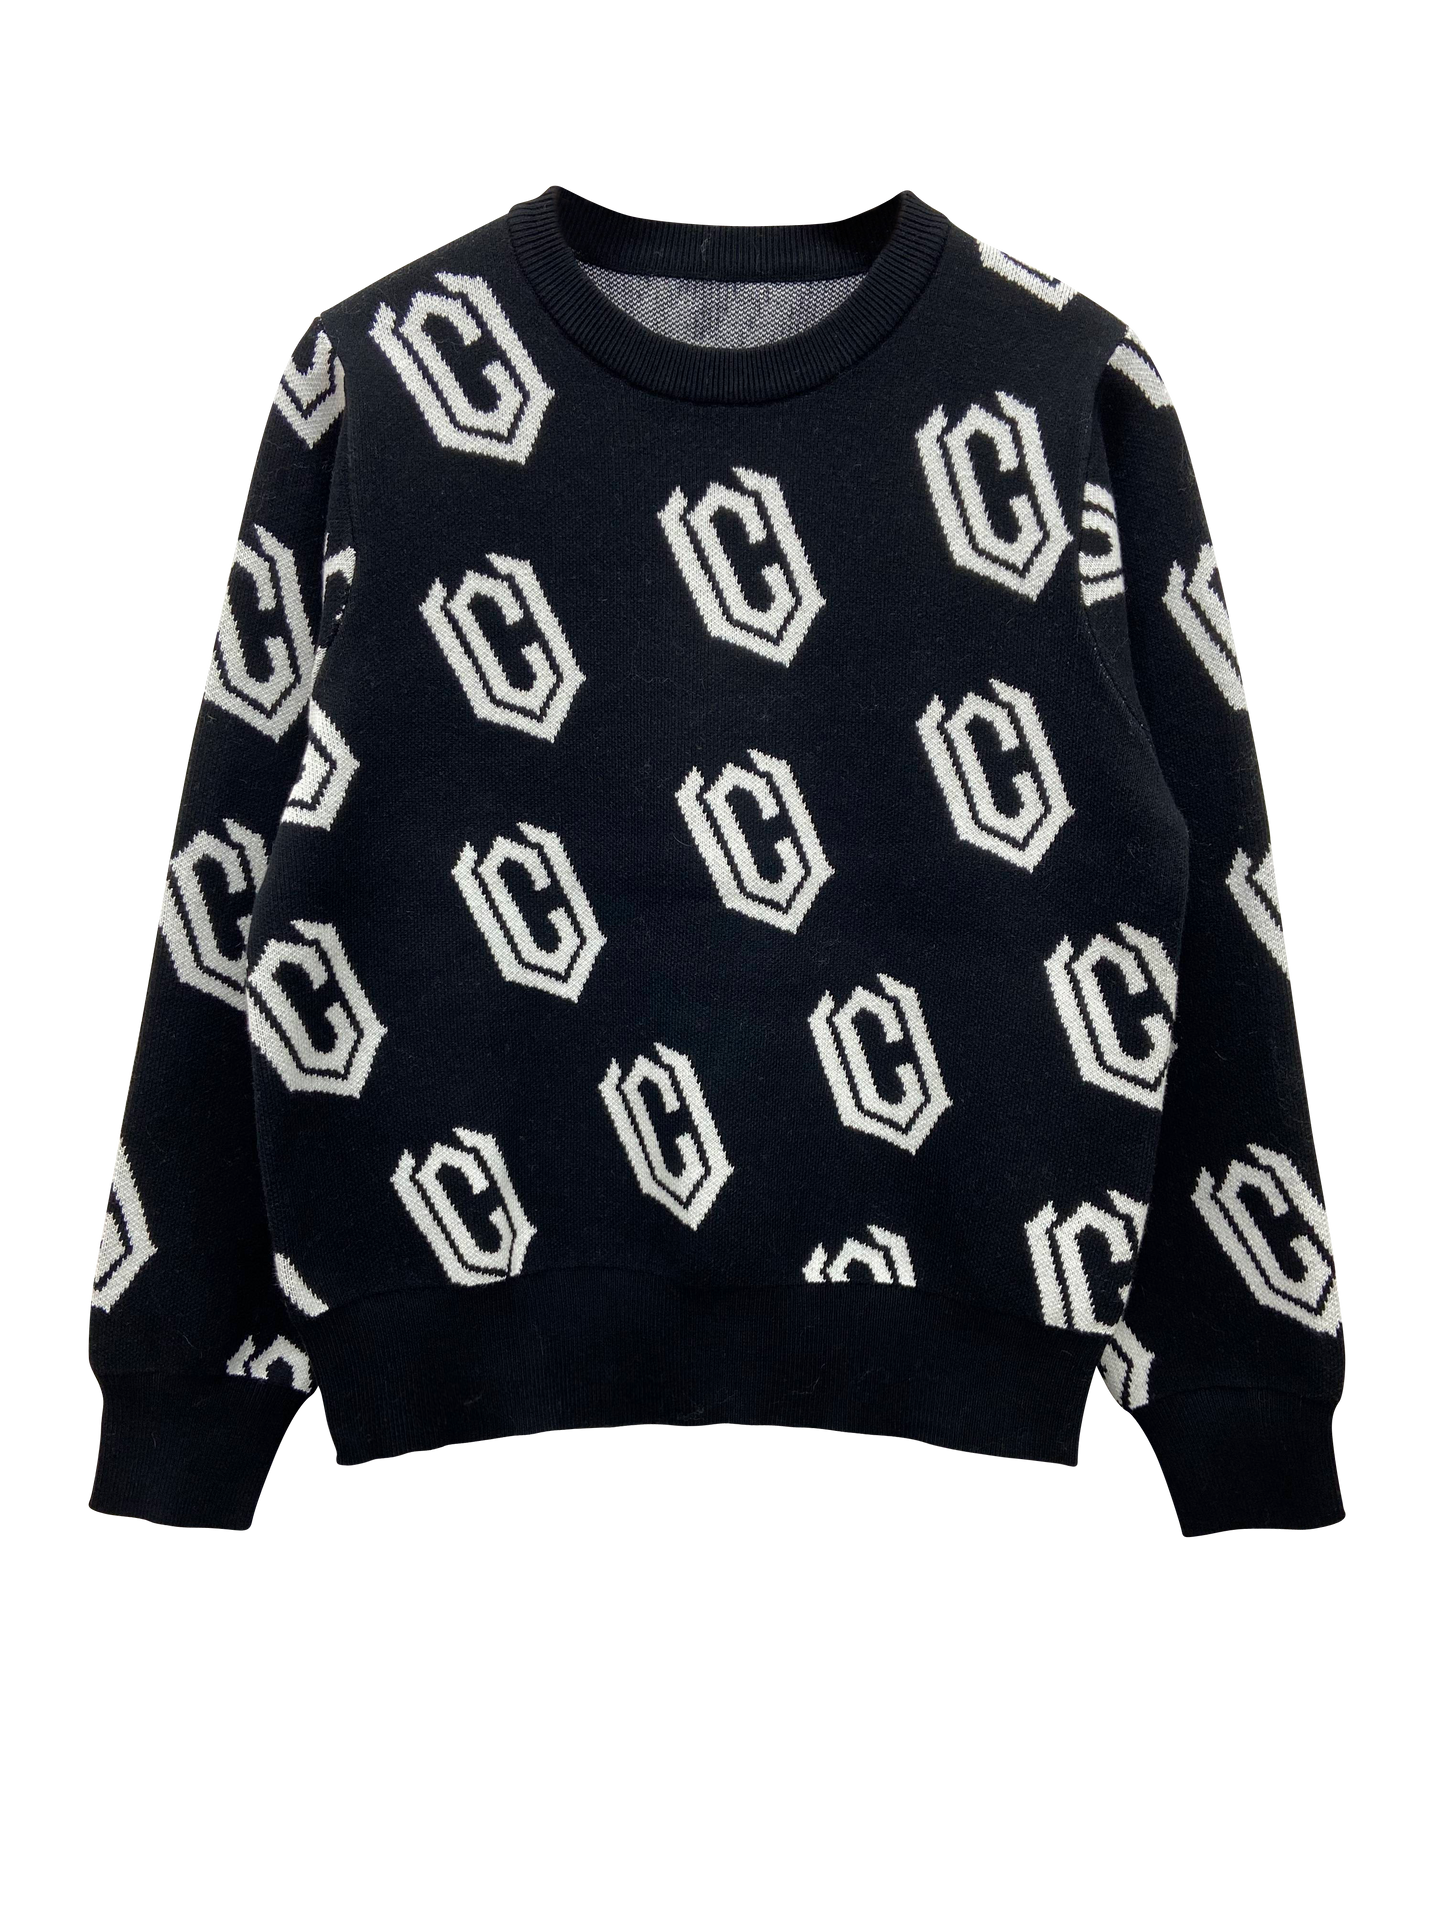 VC Women's Répete Sweater - Black